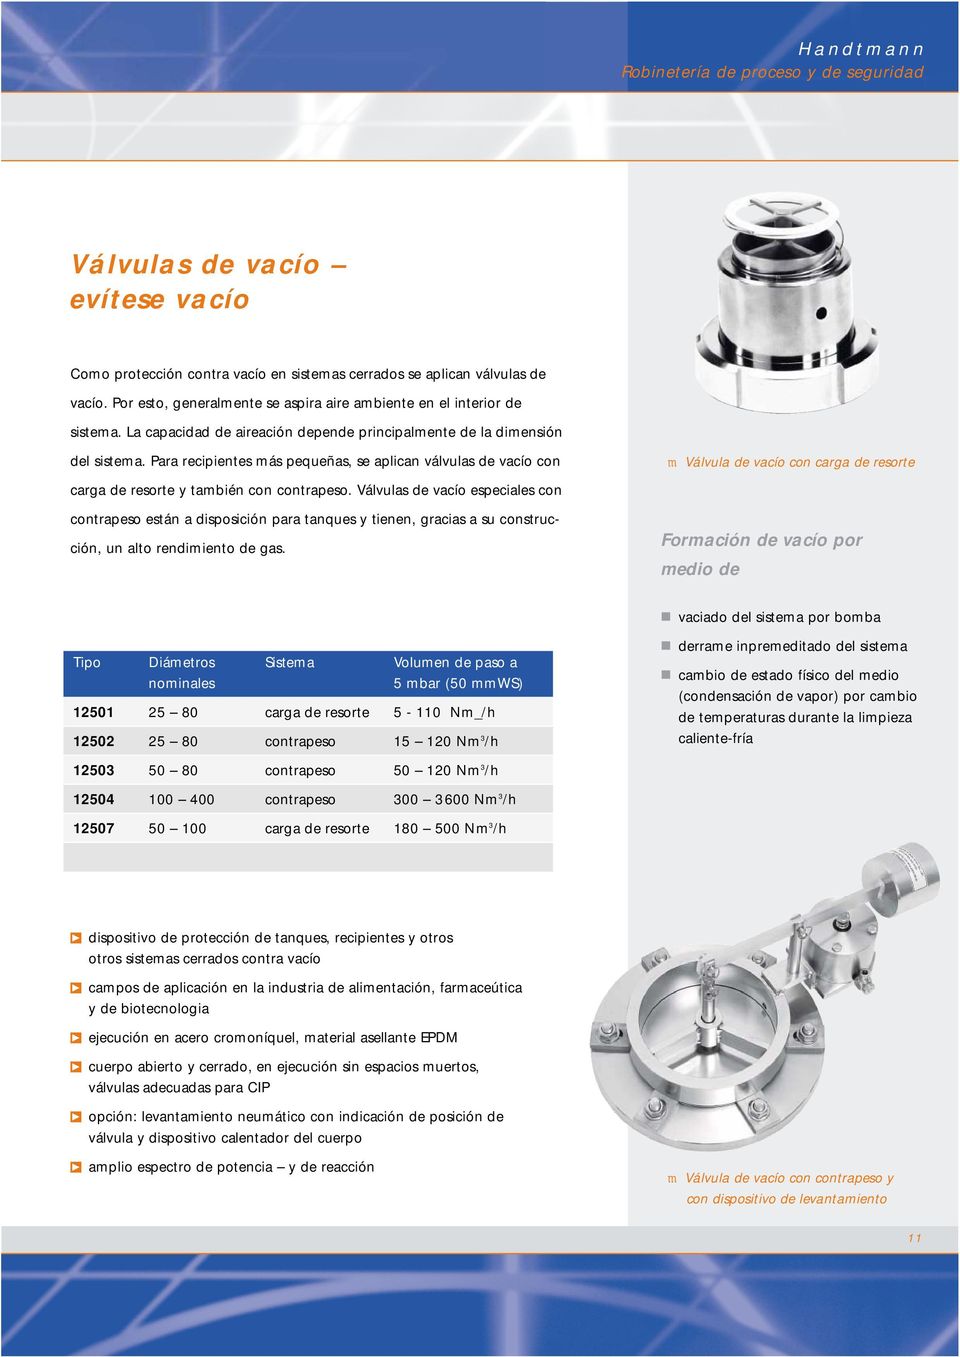 Para recipientes más pequeñas, se aplican válvulas de vacío con m Válvula de vacío con carga de resorte carga de resorte y también con contrapeso.